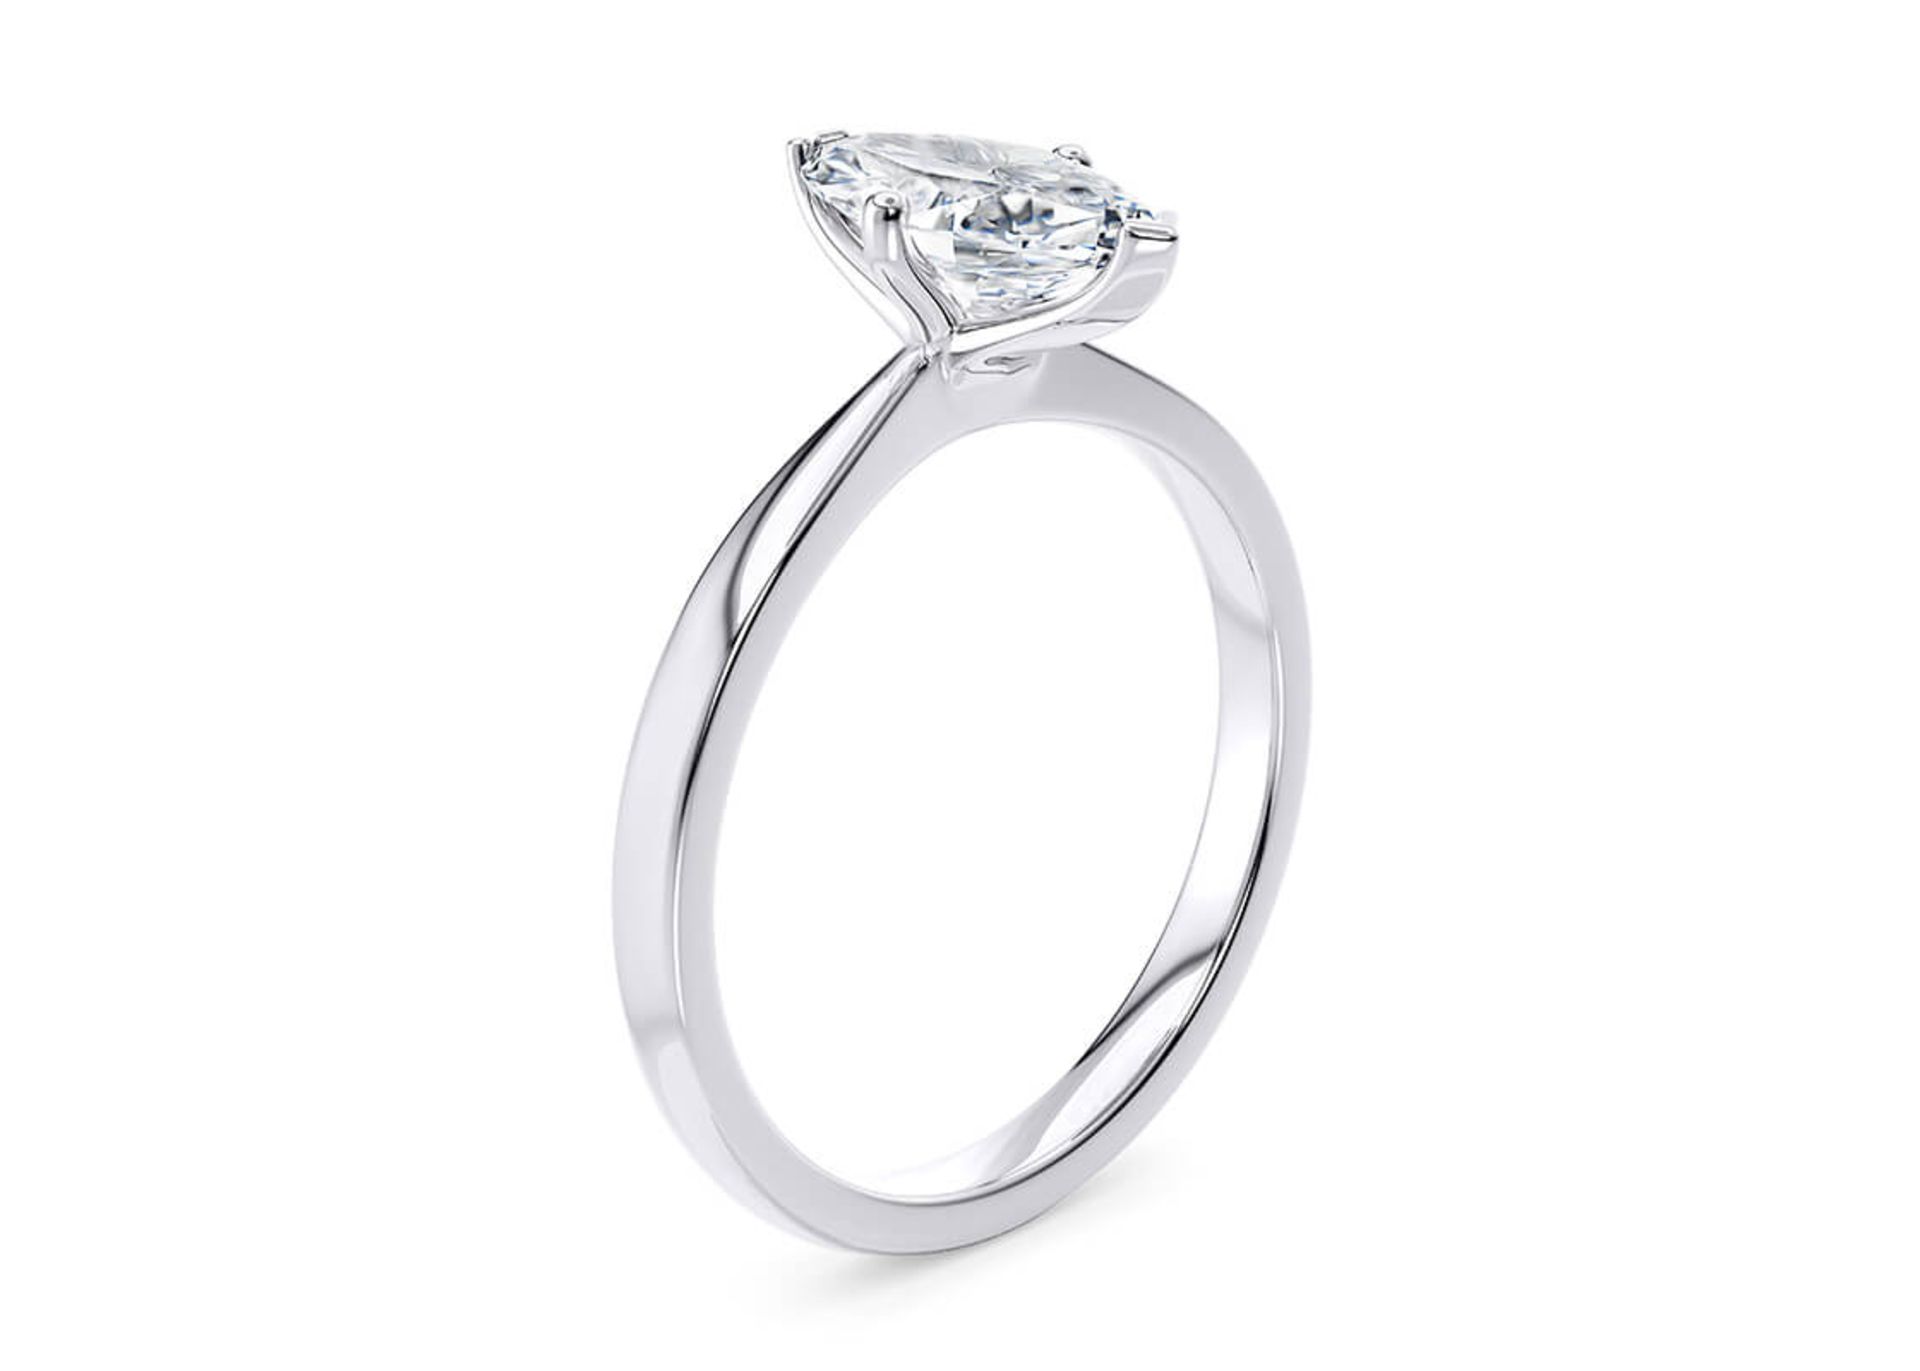 Marquise Cut Diamond Platinum Ring 2.00 Carat D Colour VS2 Clarity EX EX - IGI - Image 2 of 4